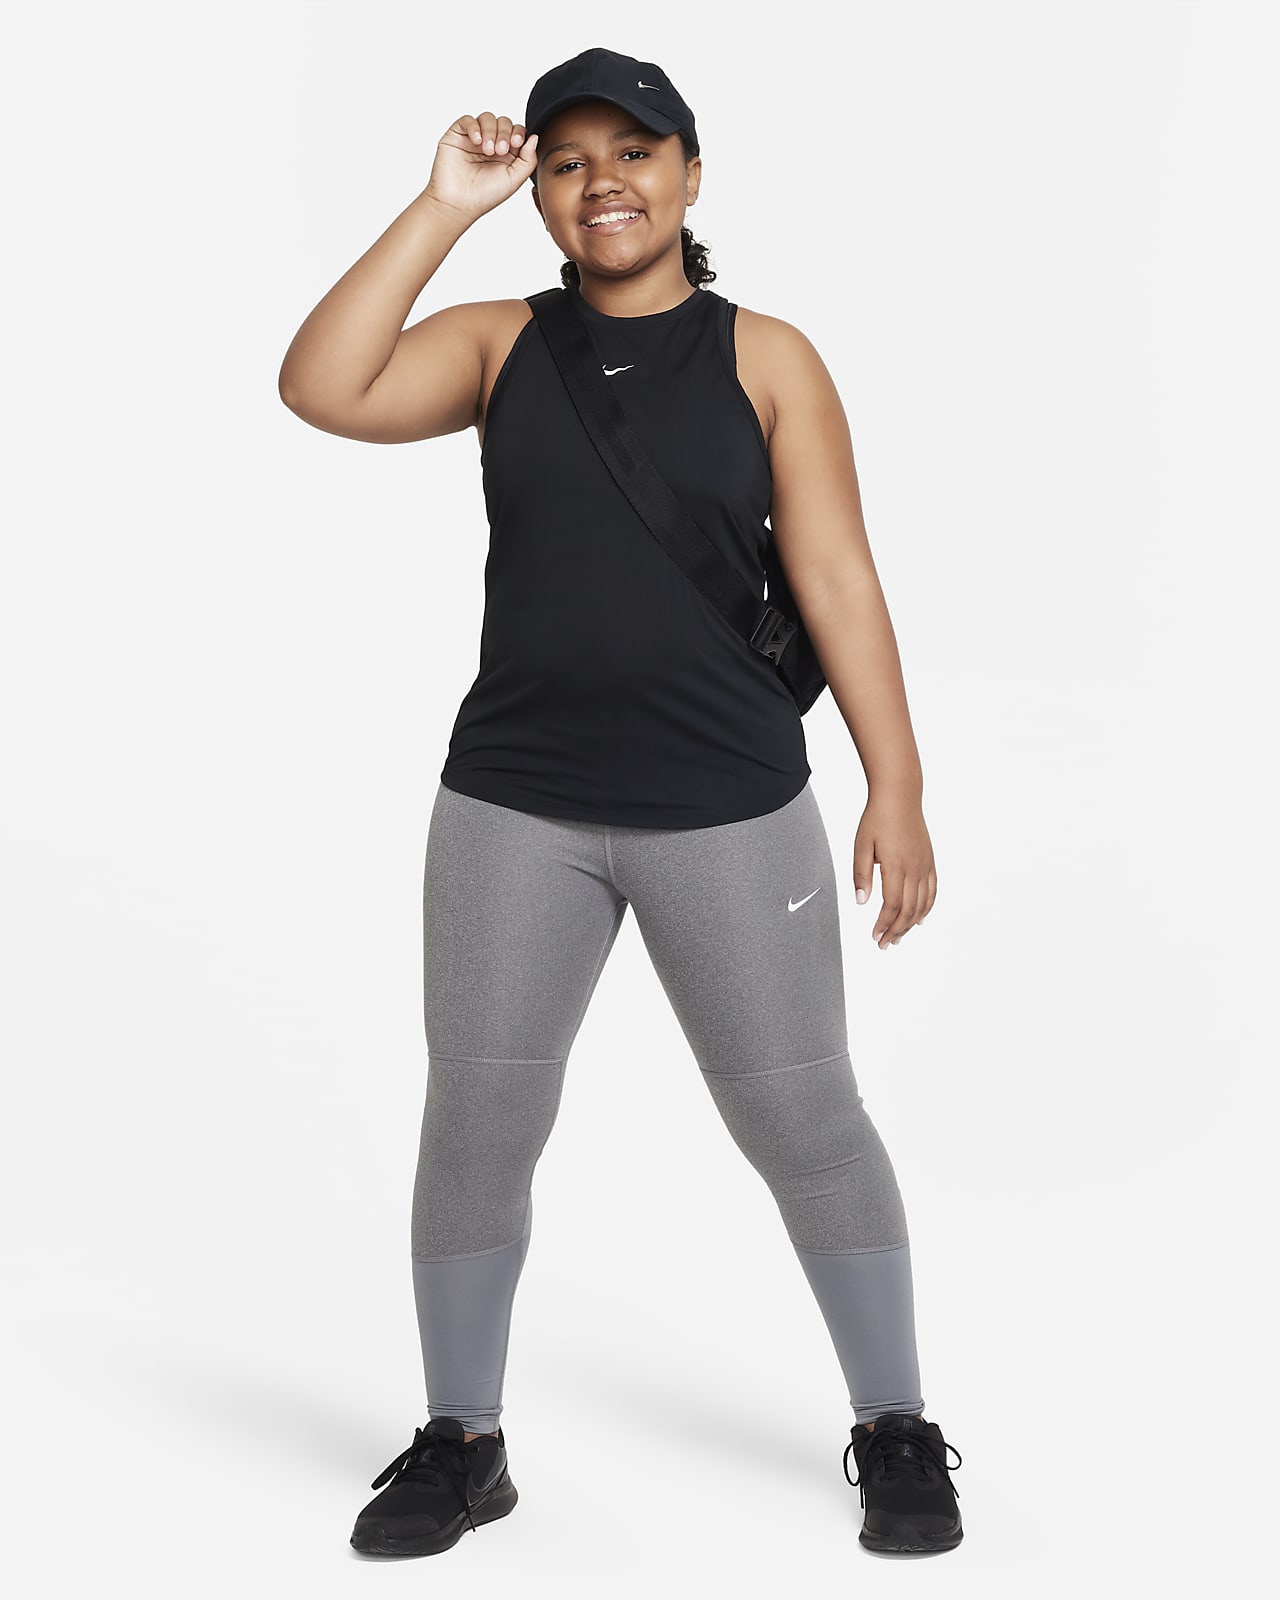 Nike Older Girls Pro Leggings - Navy